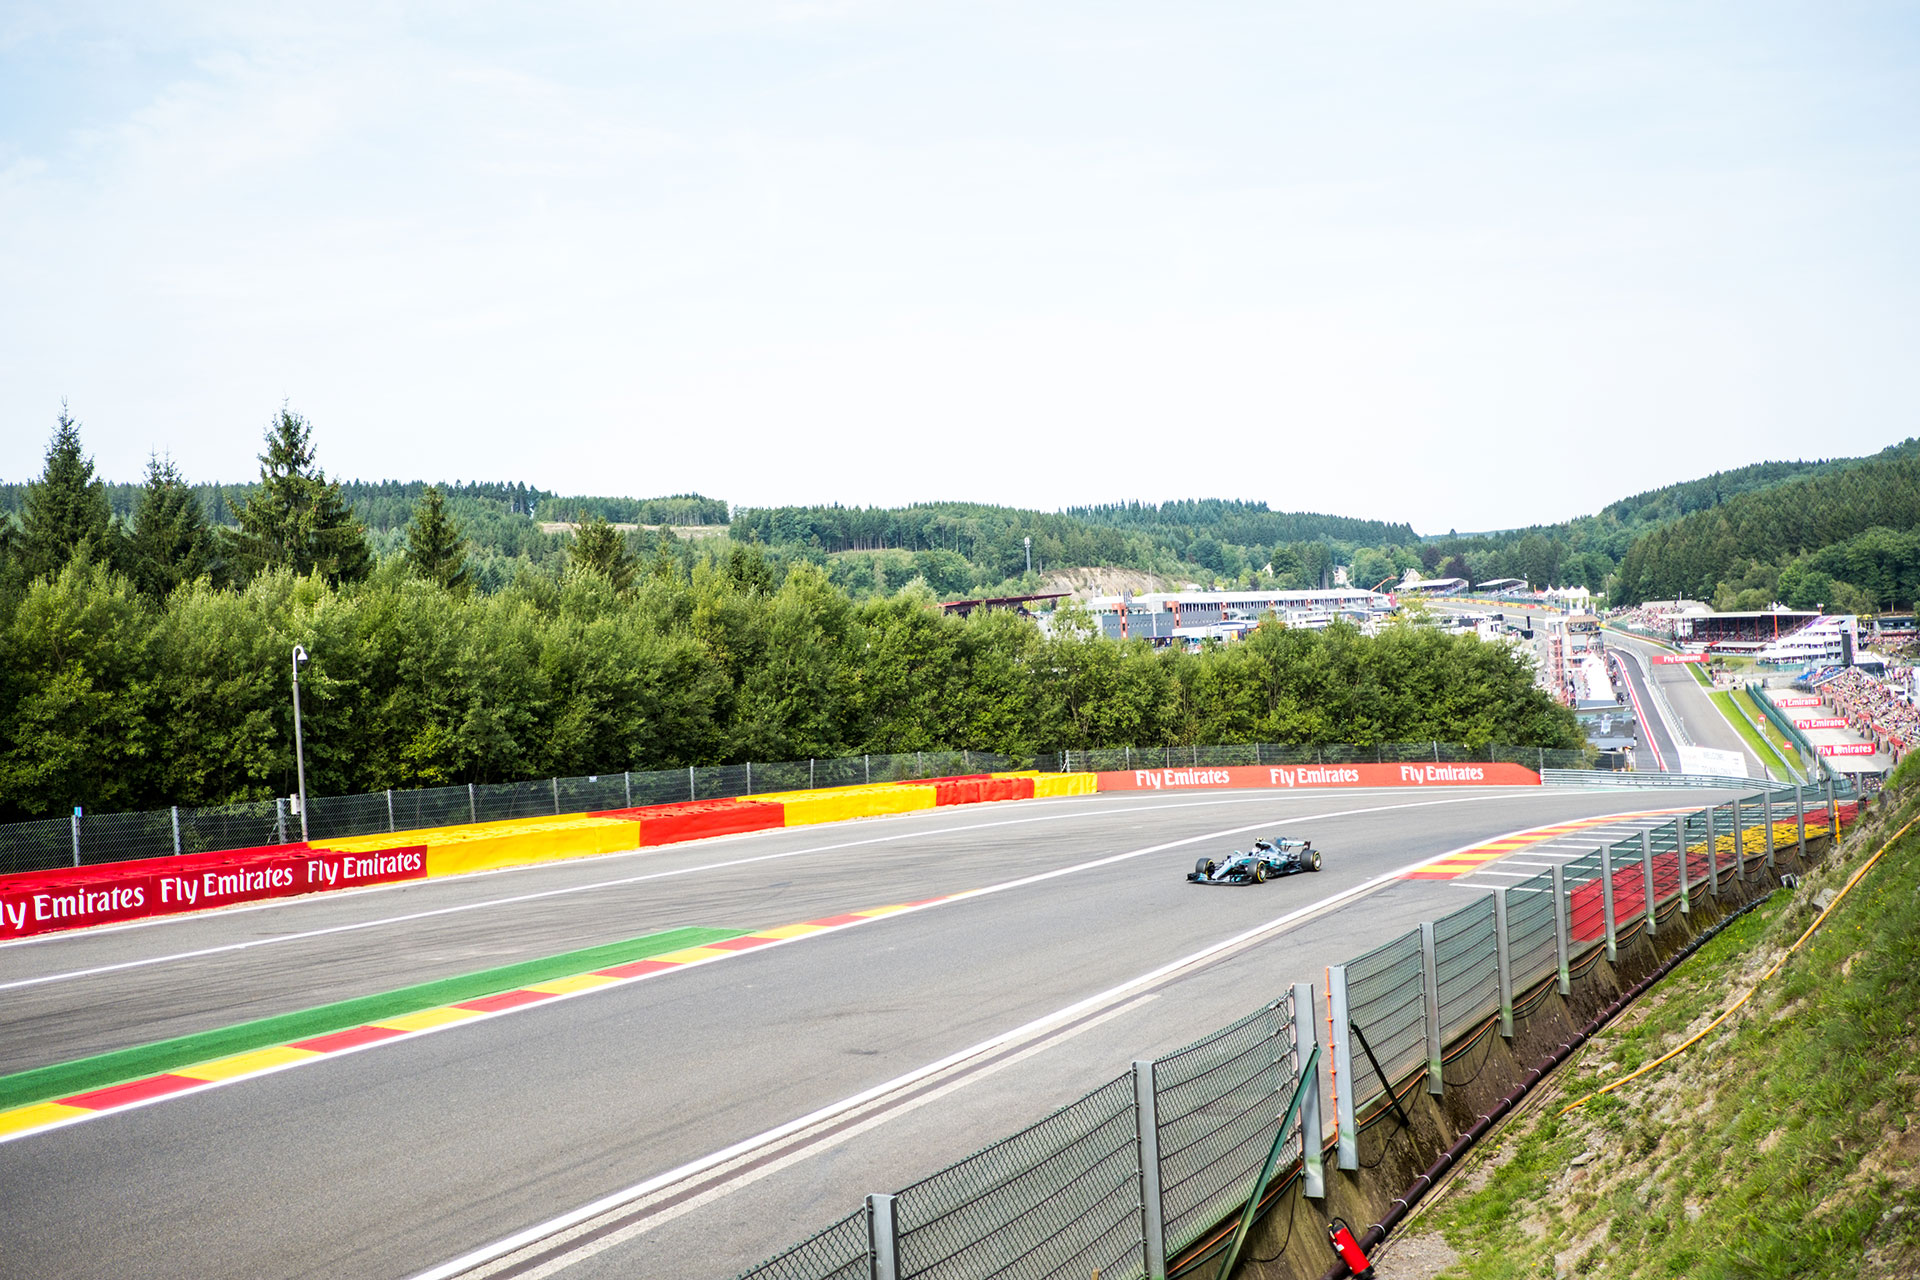 Circuit - Spa Francorchamps - F1 - Formule 1 - Belgique